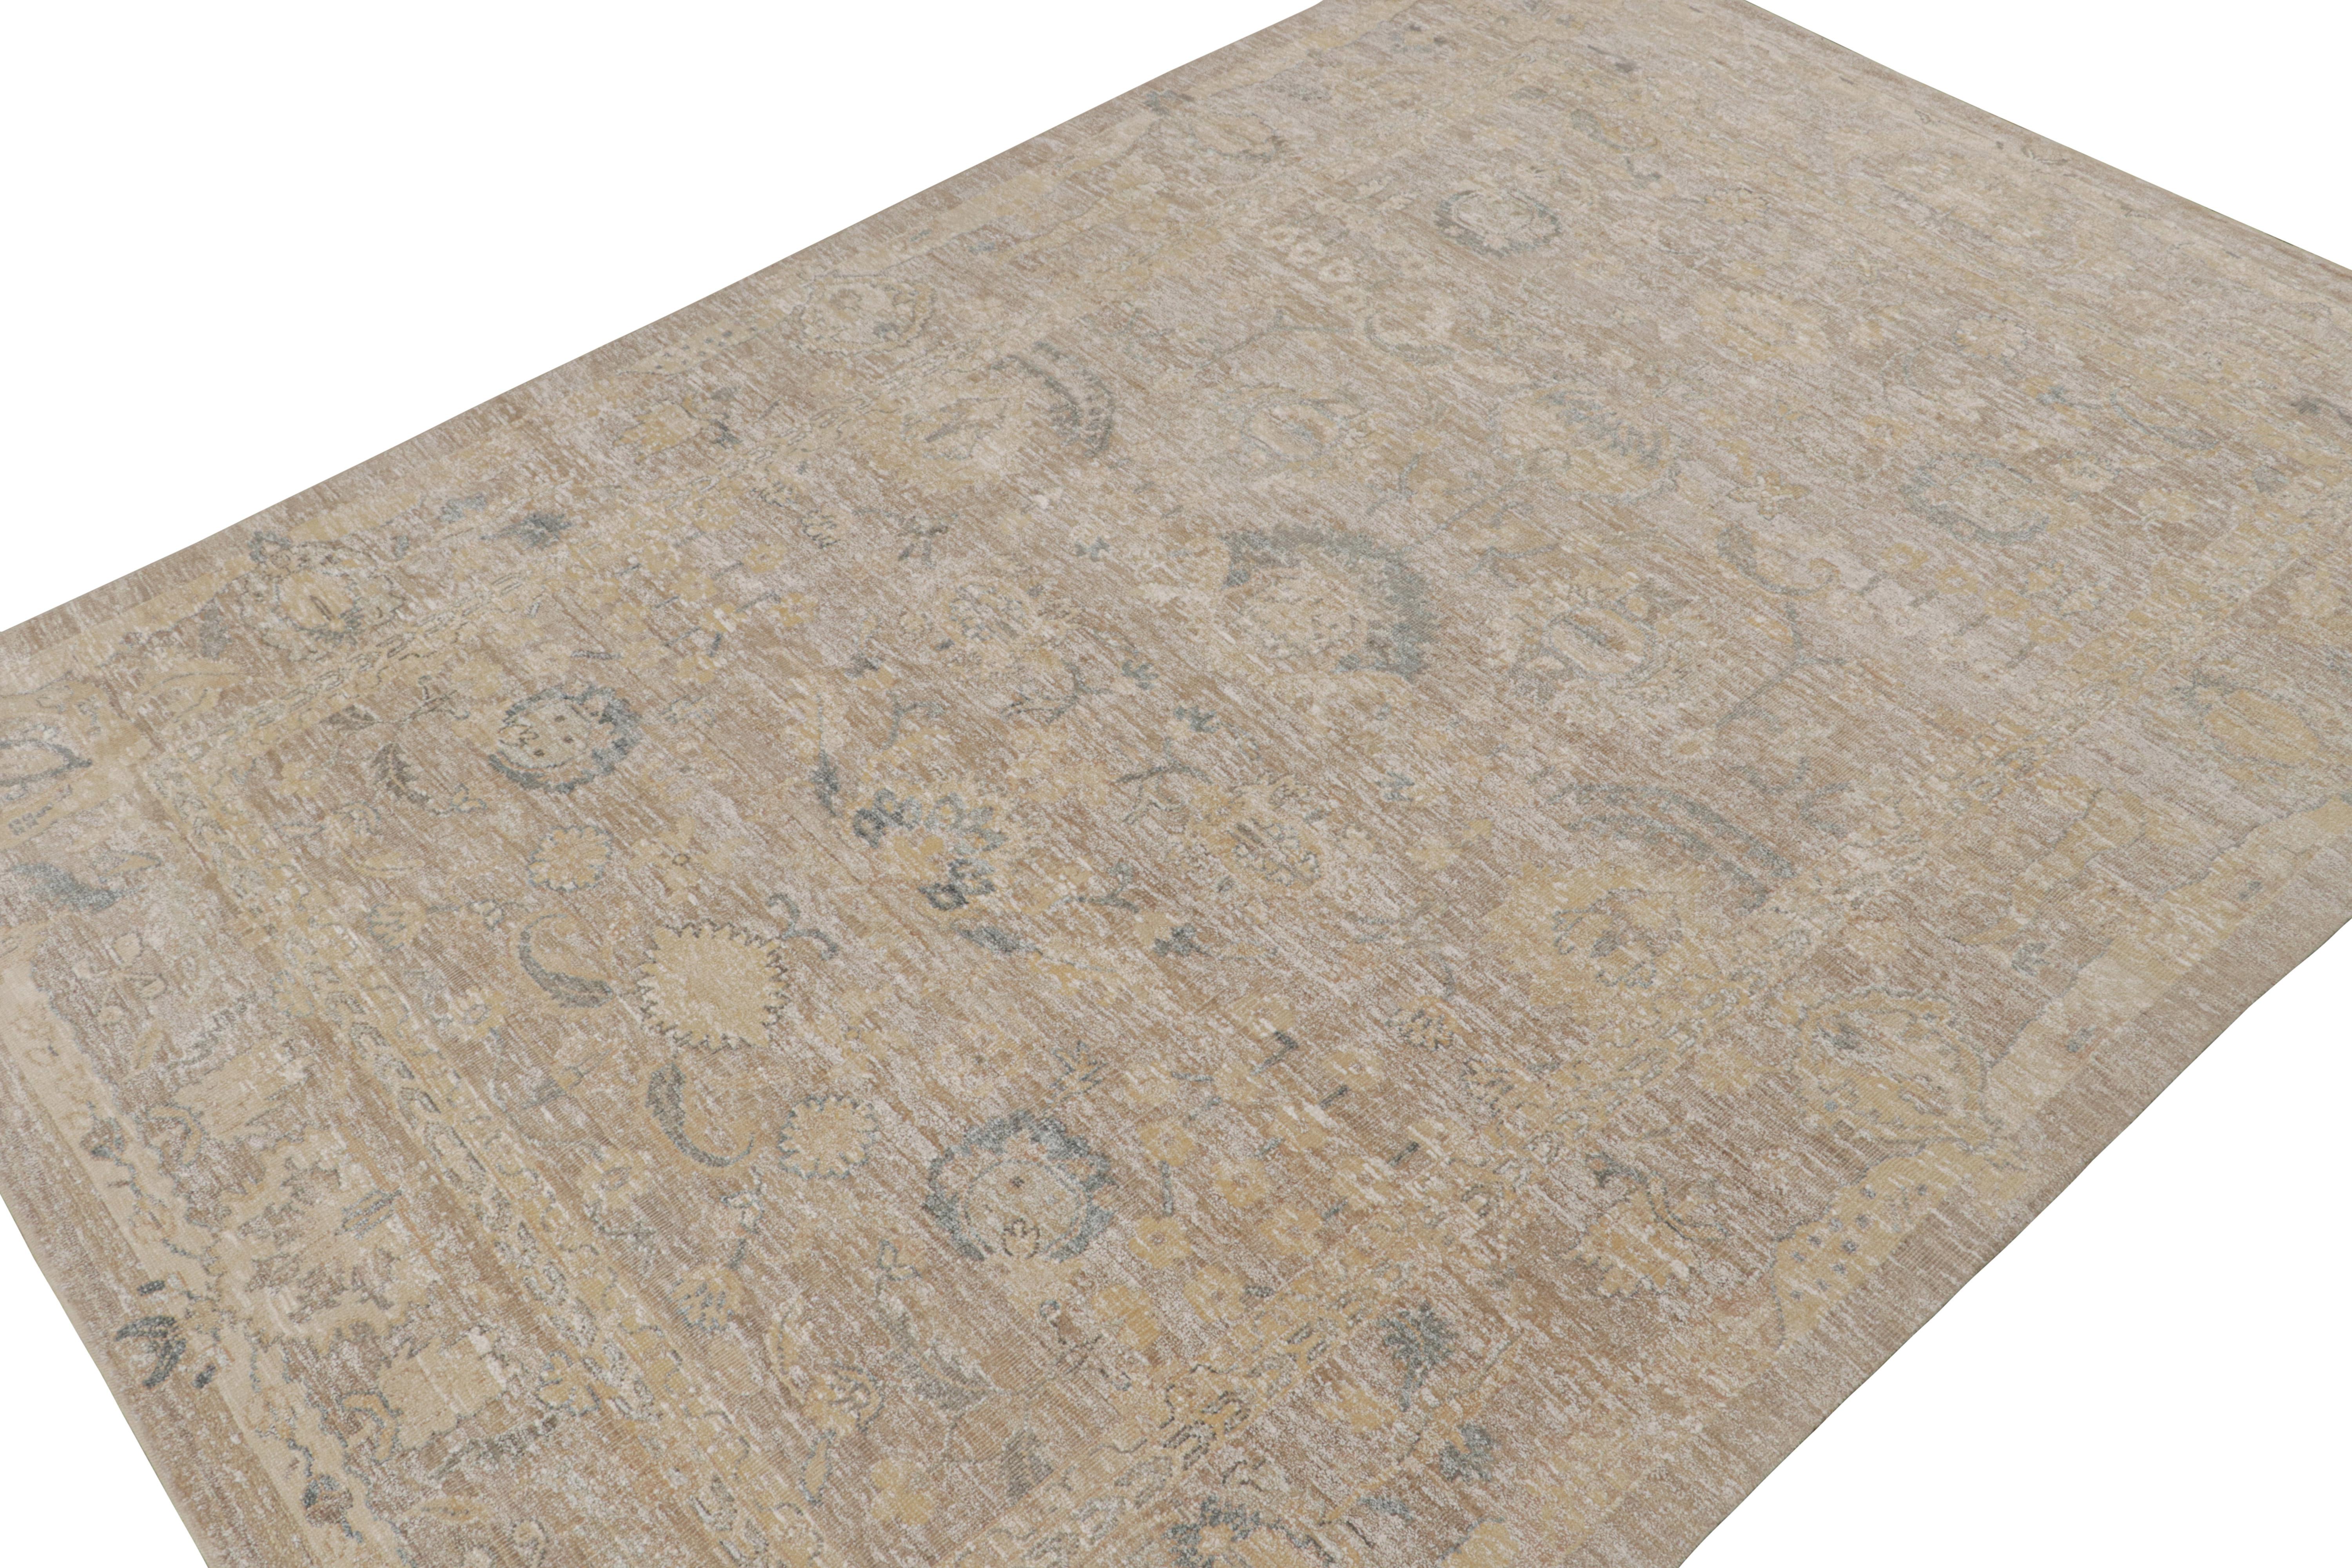 Dieser 10x14 große Teppich ist von antiken Oushak-Teppichen inspiriert - aus der neuen Modern Classics Collection'S von Rug & Kilim. Der handgeknüpfte Seidenstoff hat taupefarbene und beige-braune Untertöne mit Tribal-Motiven und floralen Mustern in